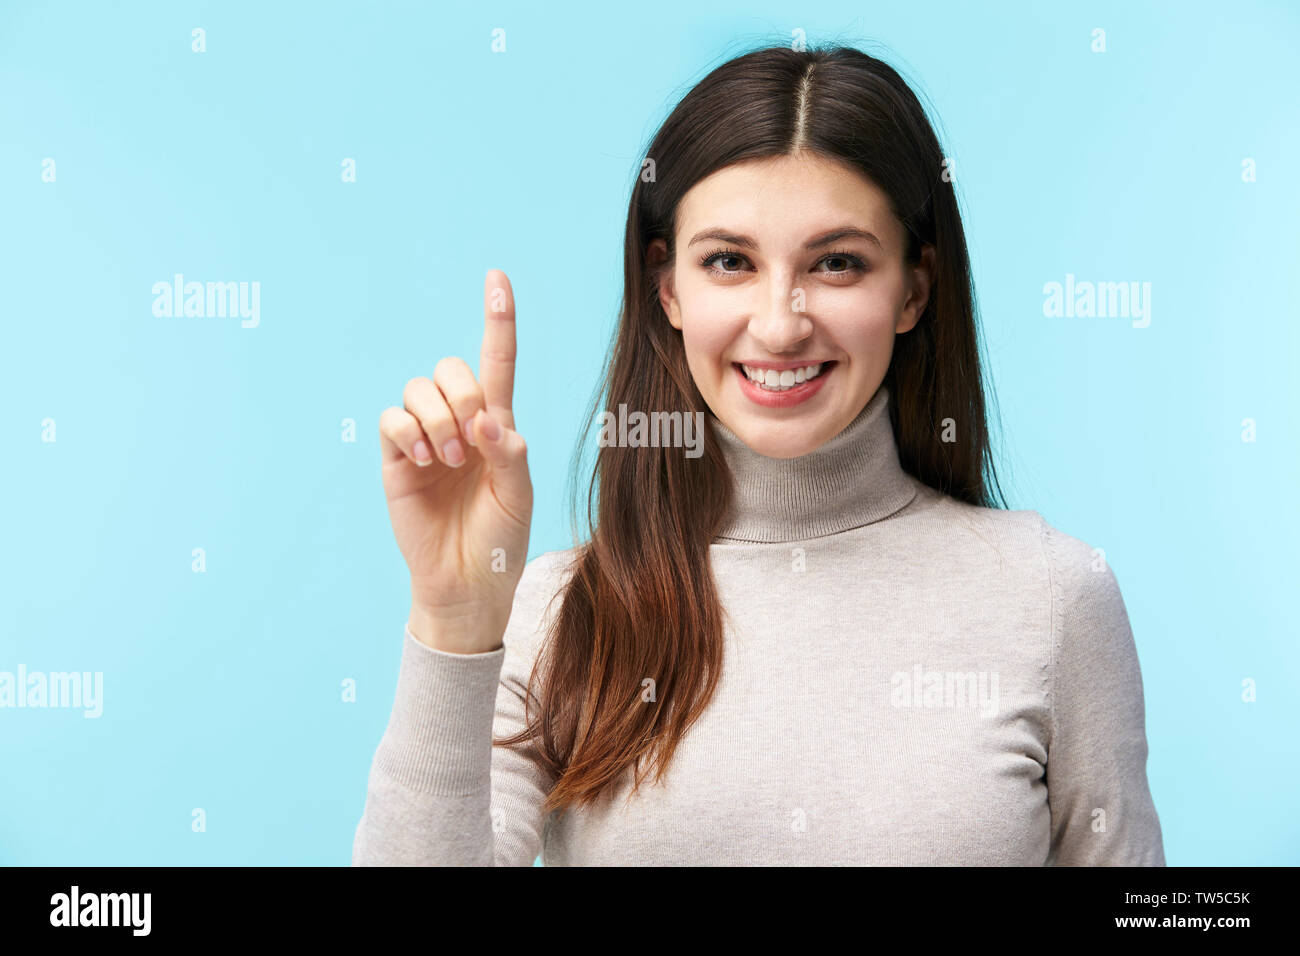 Bellissima giovane donna caucasica premendo un tasto virtuale, guardando la telecamera sorridendo, isolato su sfondo blu Foto Stock